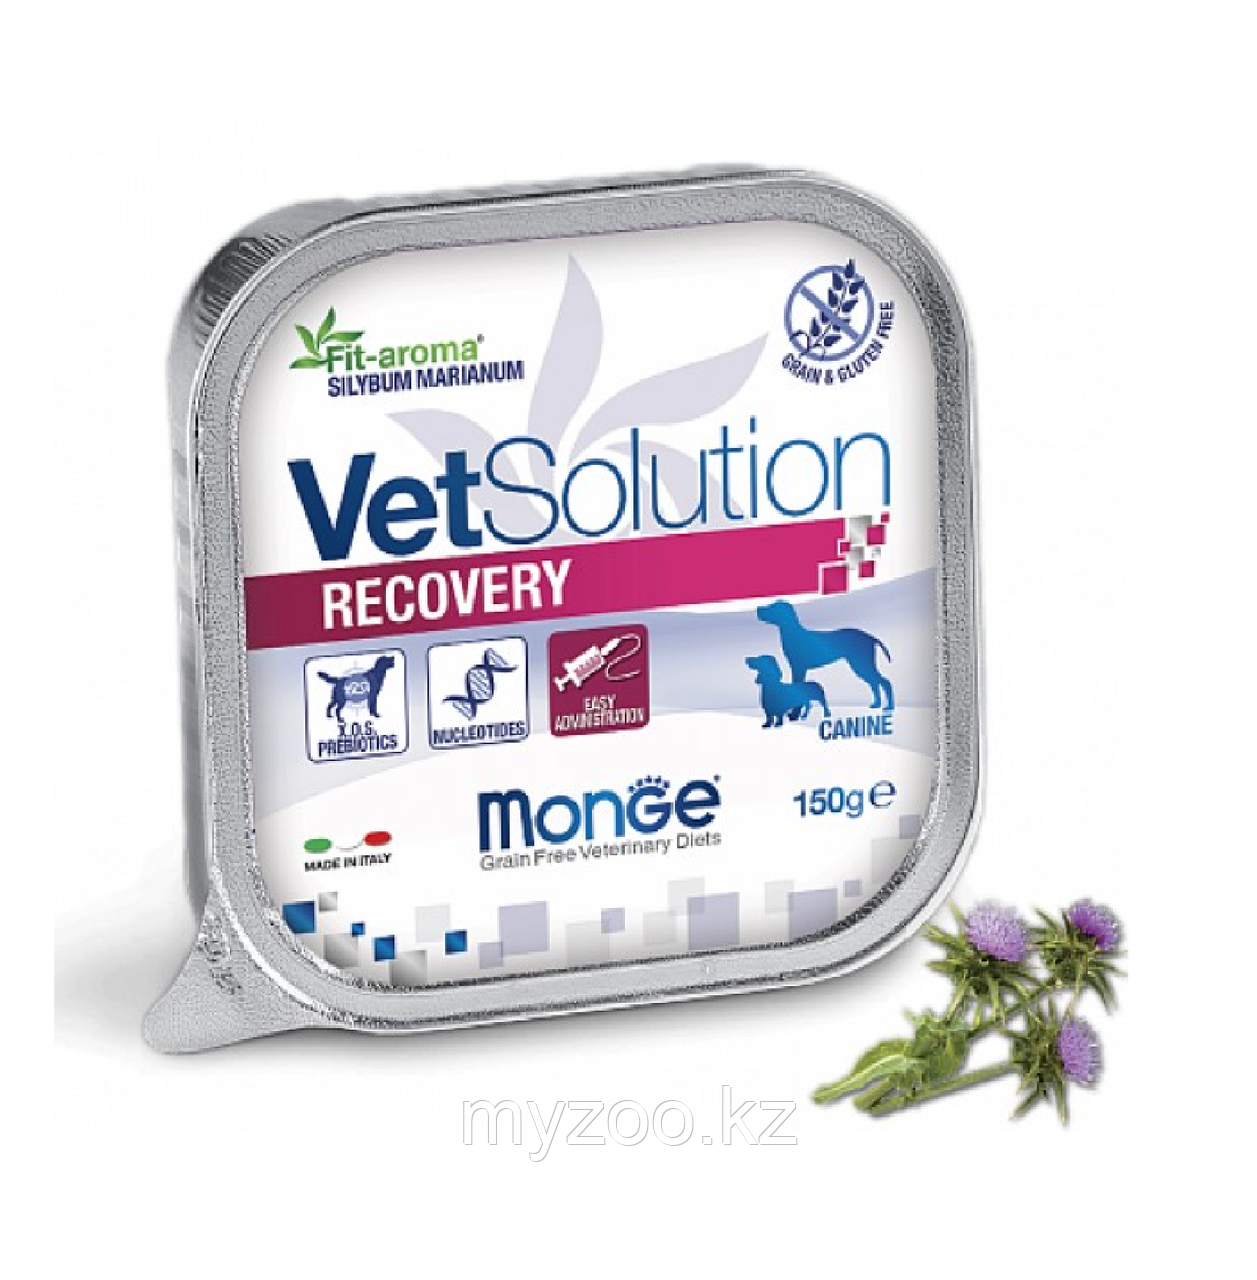 Monge Vetsolution RECOVERY востановительная диета для собак после операций и травм, 150гр.